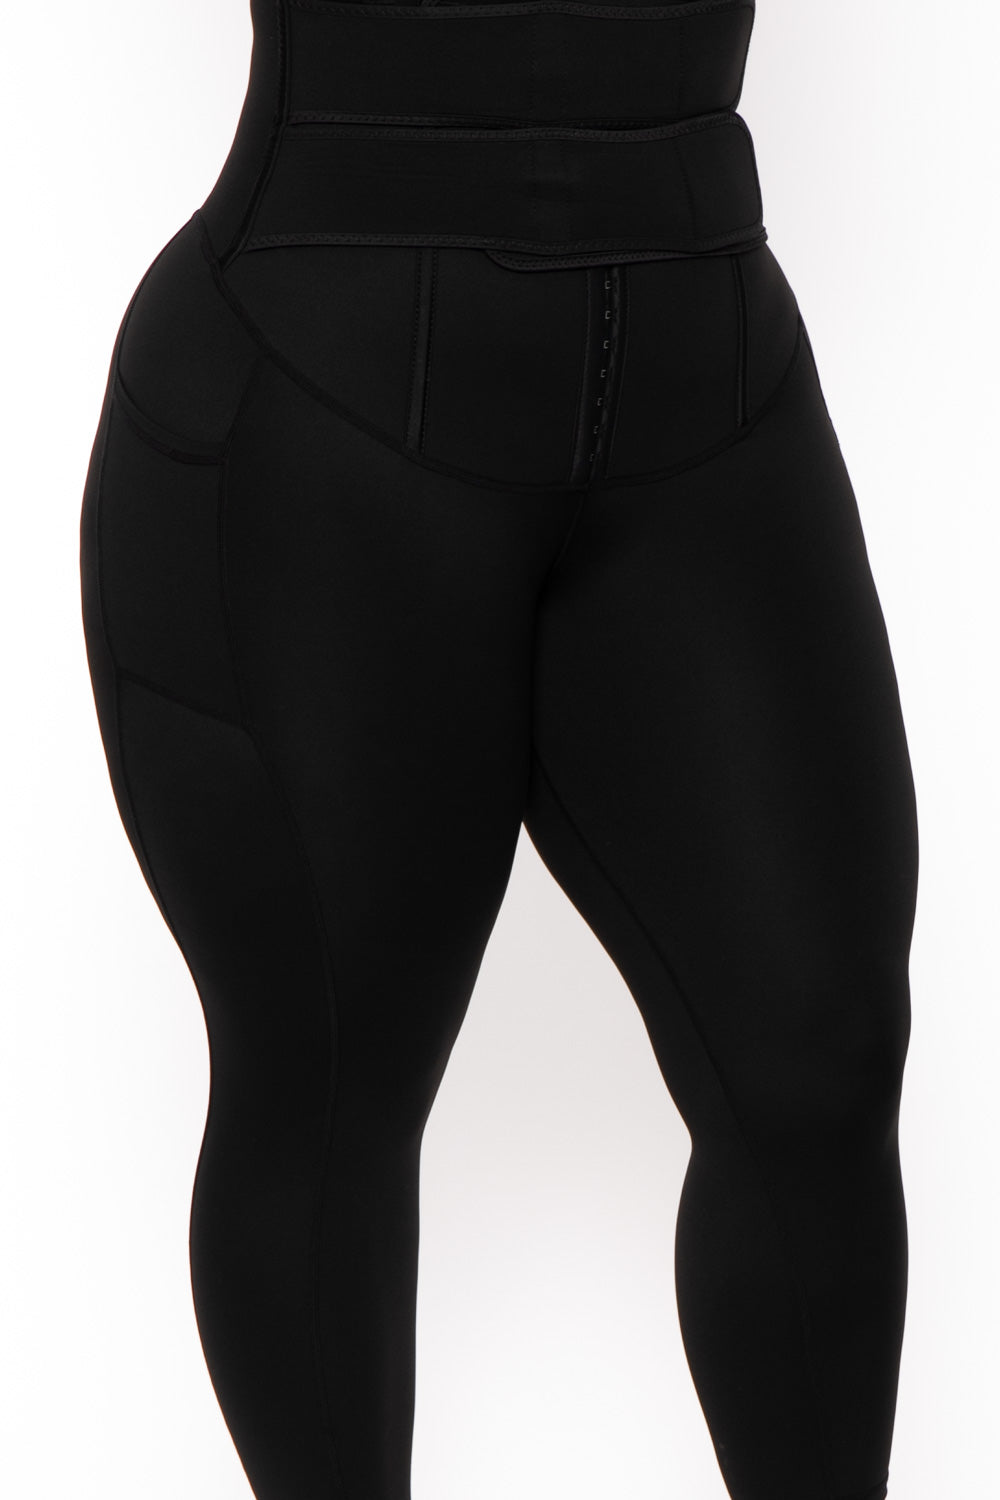 Black Single-colour shaping leggings - Buy Online